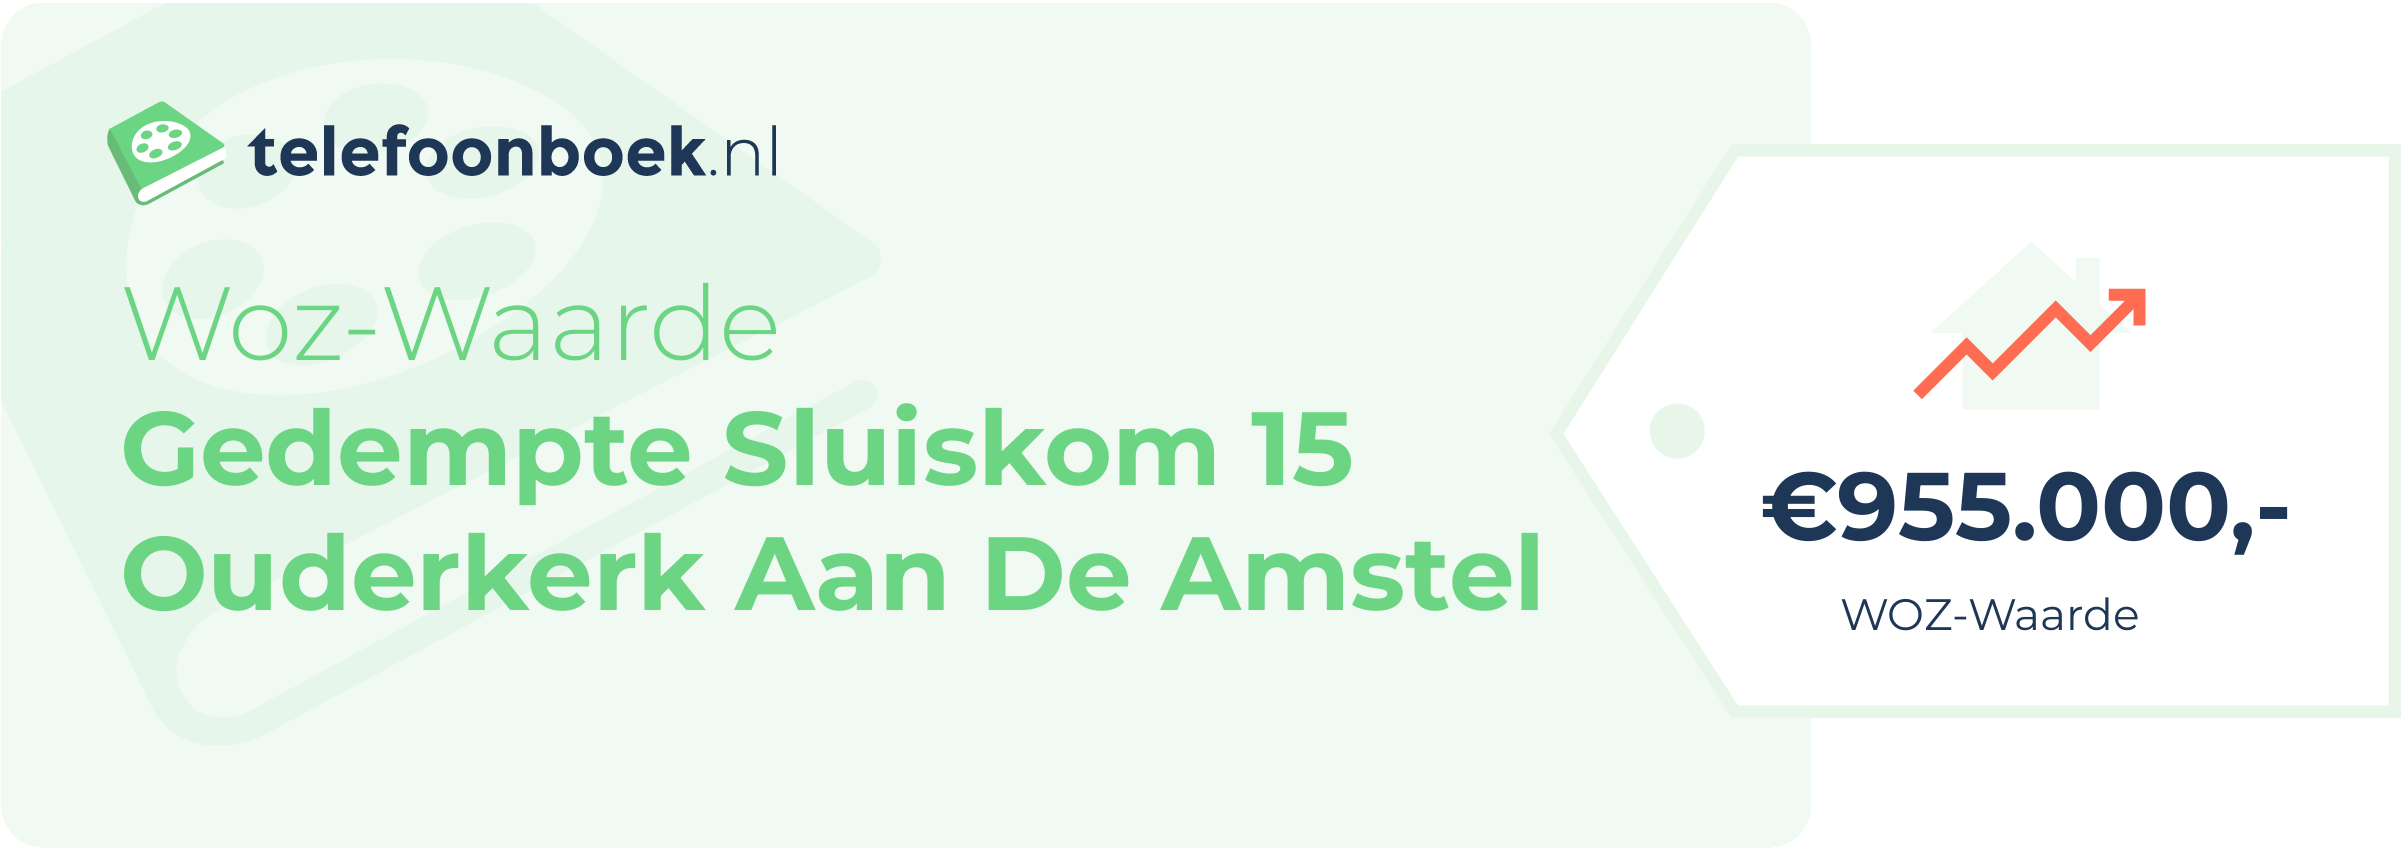 WOZ-waarde Gedempte Sluiskom 15 Ouderkerk Aan De Amstel